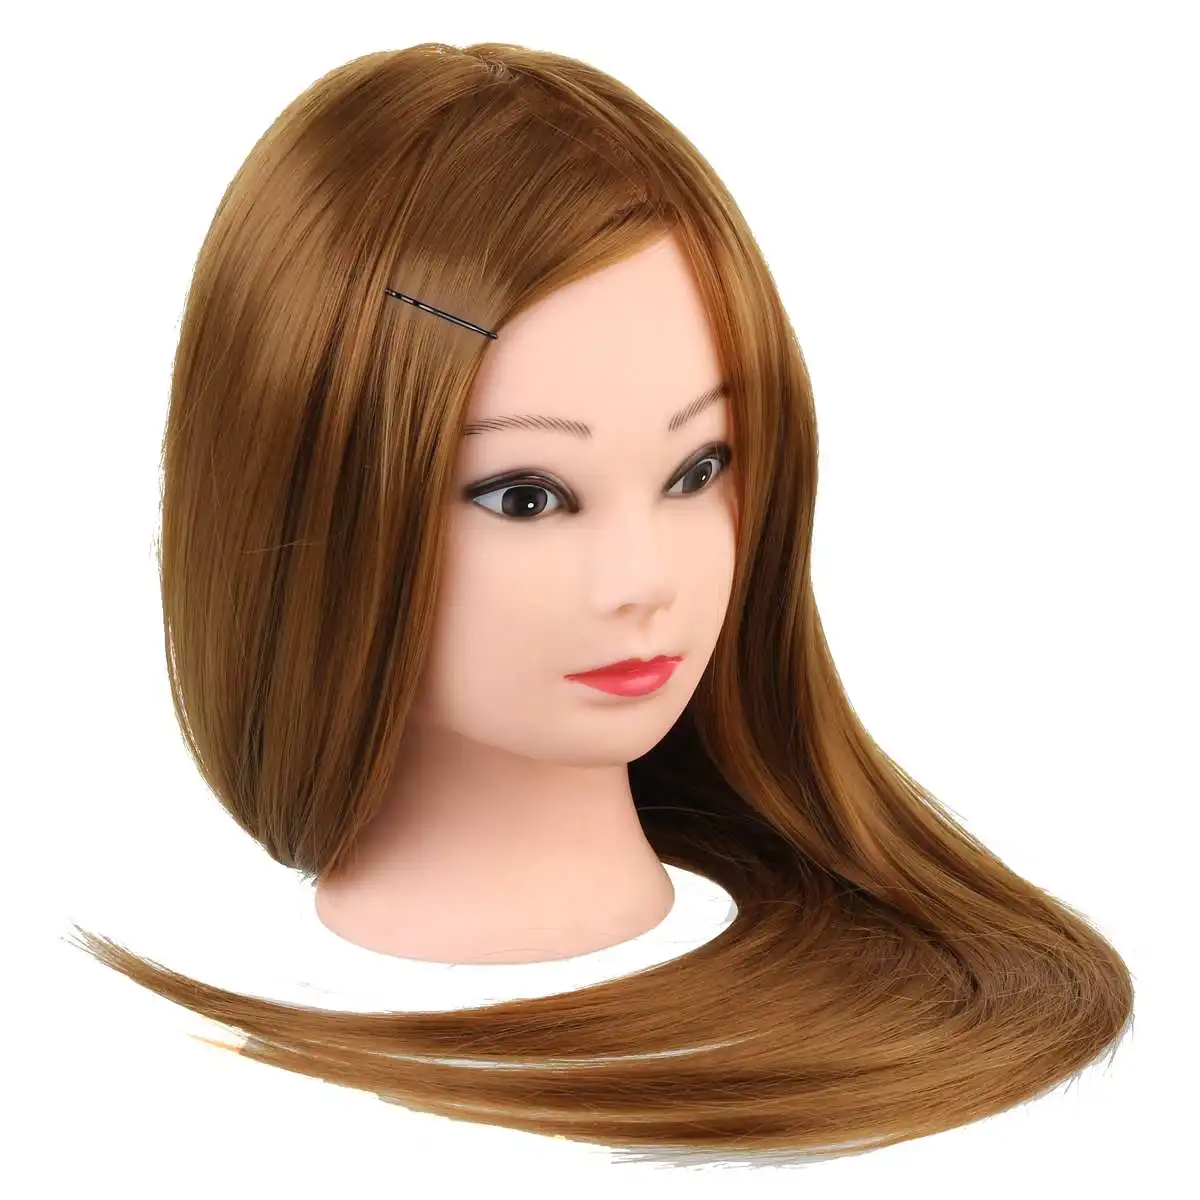 60 см манекен голова с золотыми волосами обучение Парикмахерская практика манекен куклы парикмахерские прически обучение манекены головы